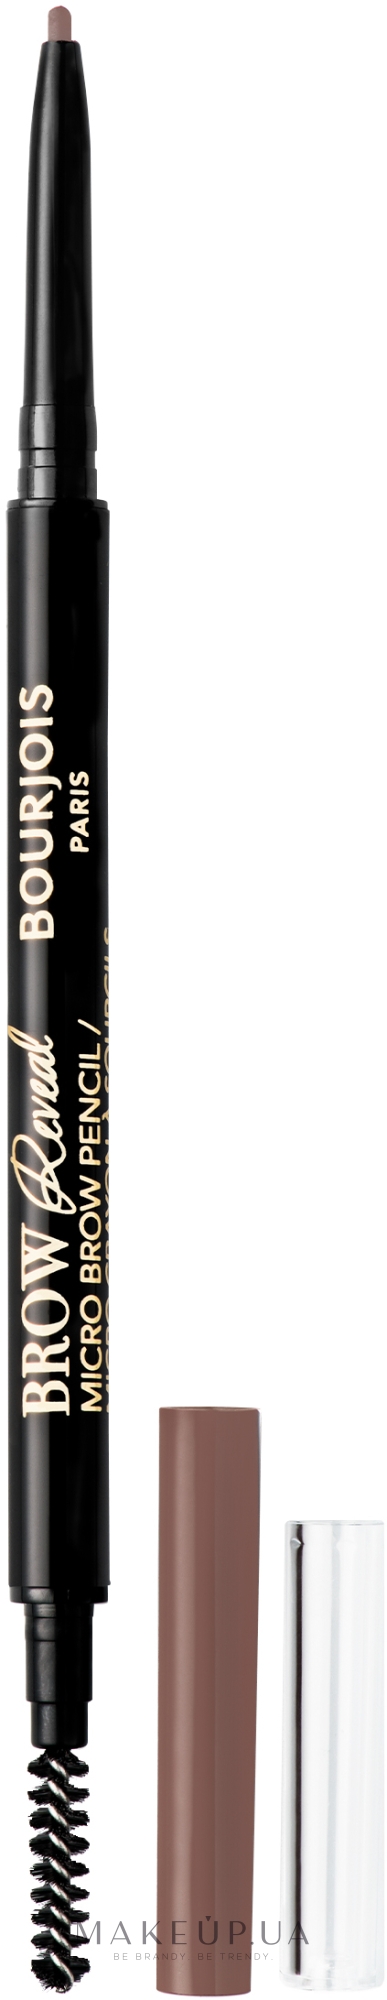 Карандаш для бровей - Bourjois Brow Reveal Micro Brow Pencil — фото 001 - Blond